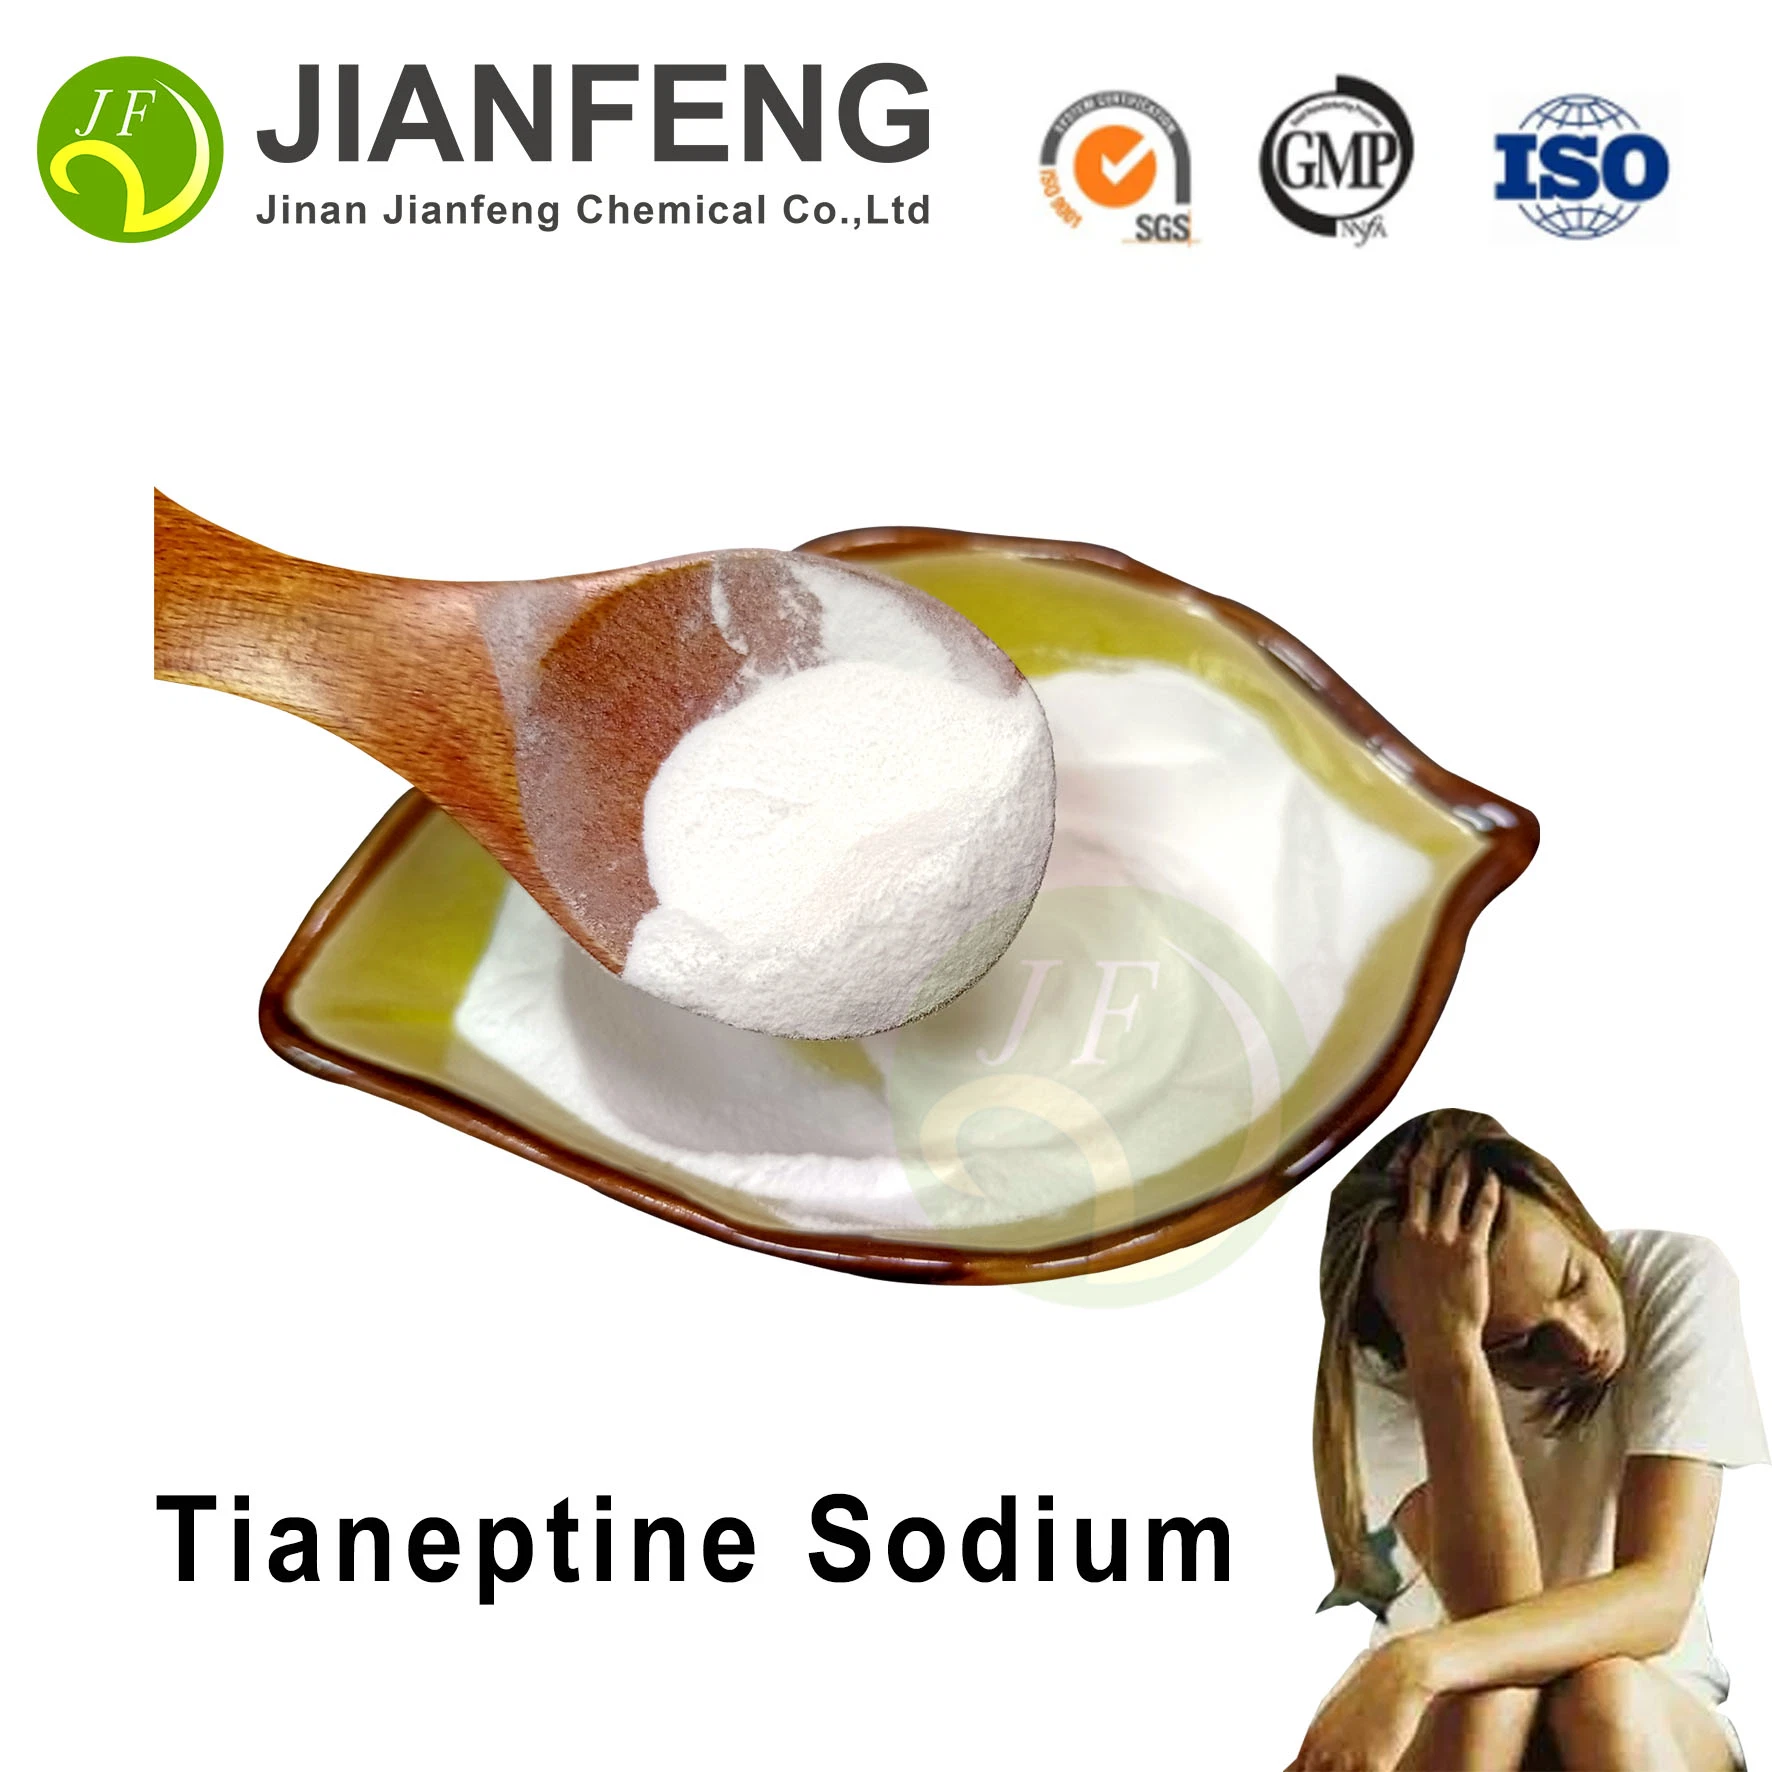 Achetez du Tianeptine Sodium en entrepôt aux États-Unis. Poudre brute de haute pureté, supplément anti-anxiété, nootropique à 99% de Tianeptine Sodium. Prix en vrac de Tianeptine Sodium CAS 30123-17-2.